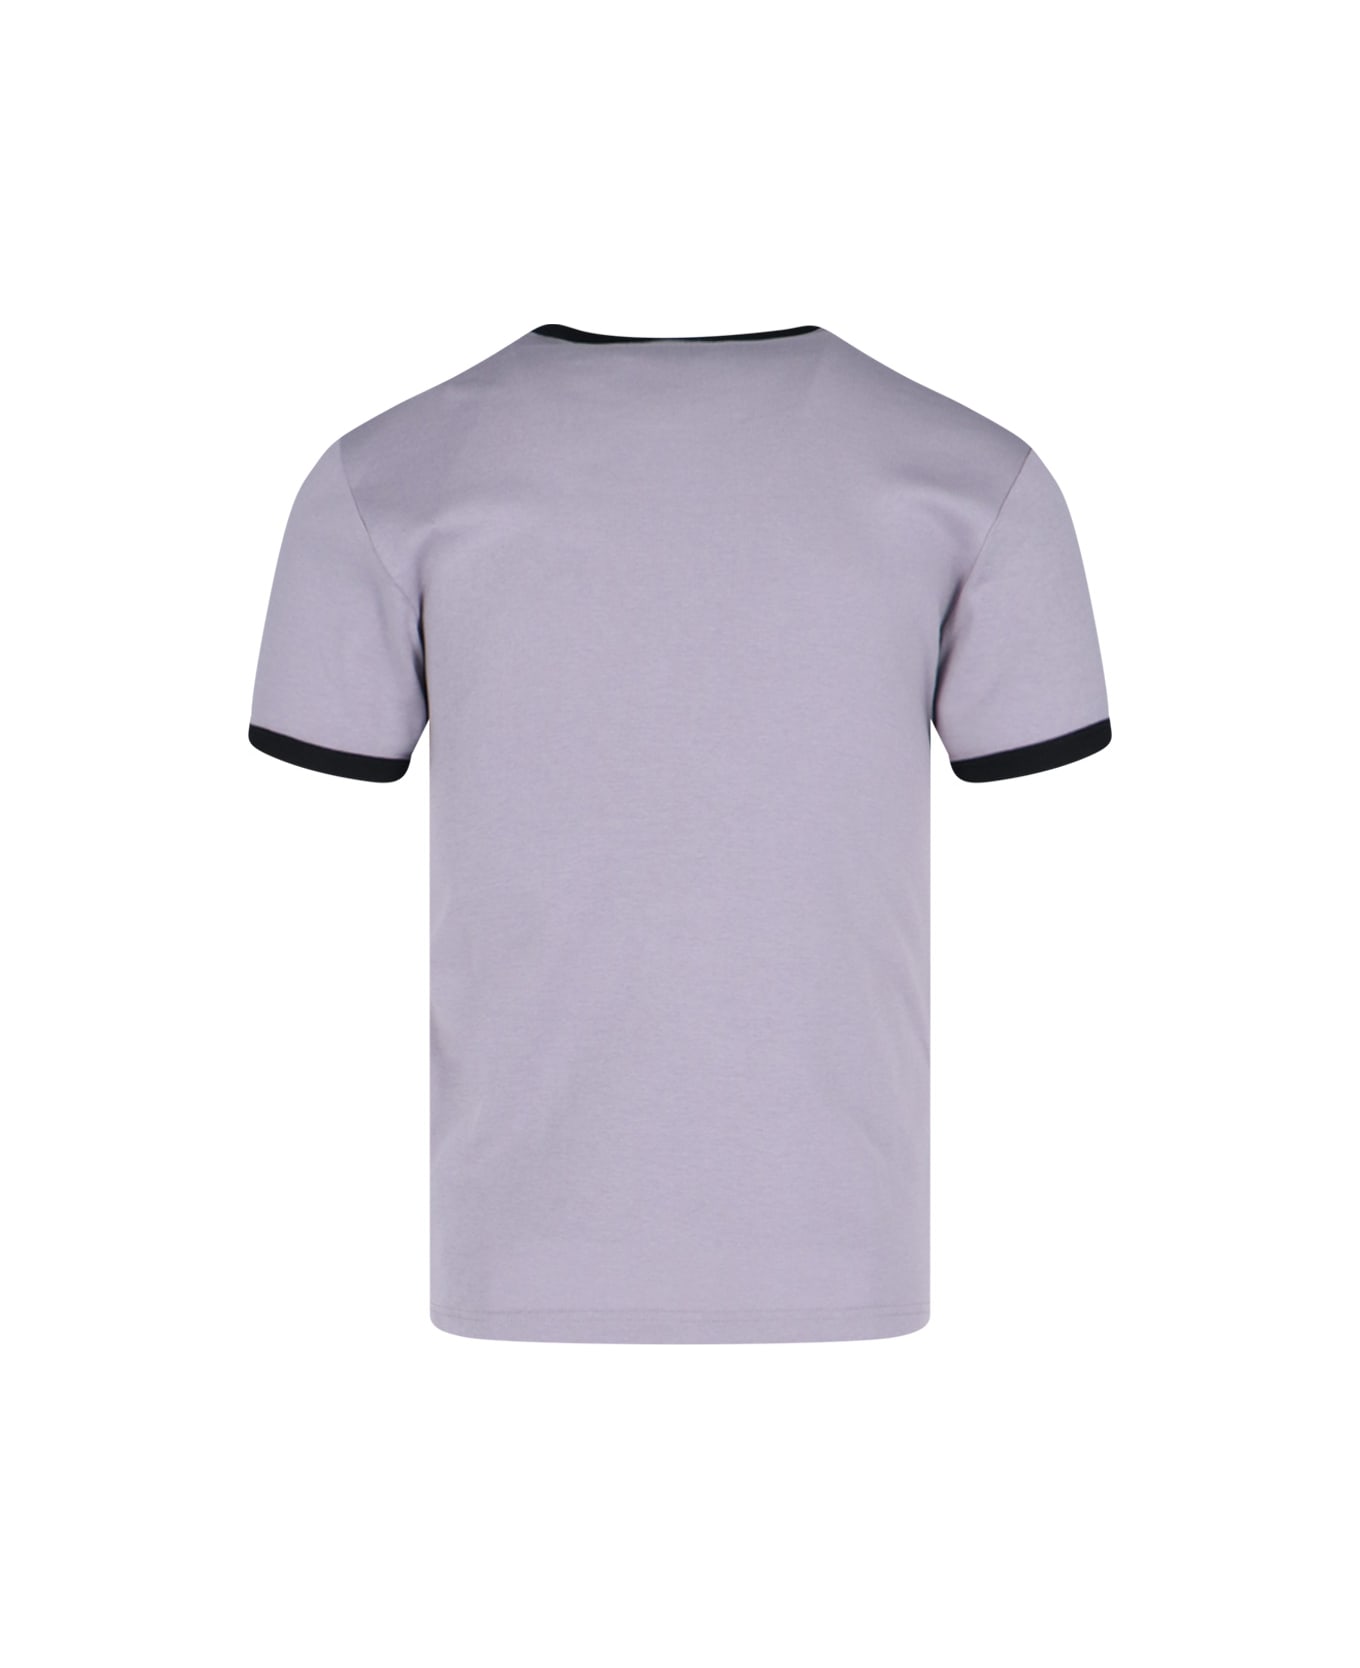 Courrèges 'contraste' T-shirt - Purple